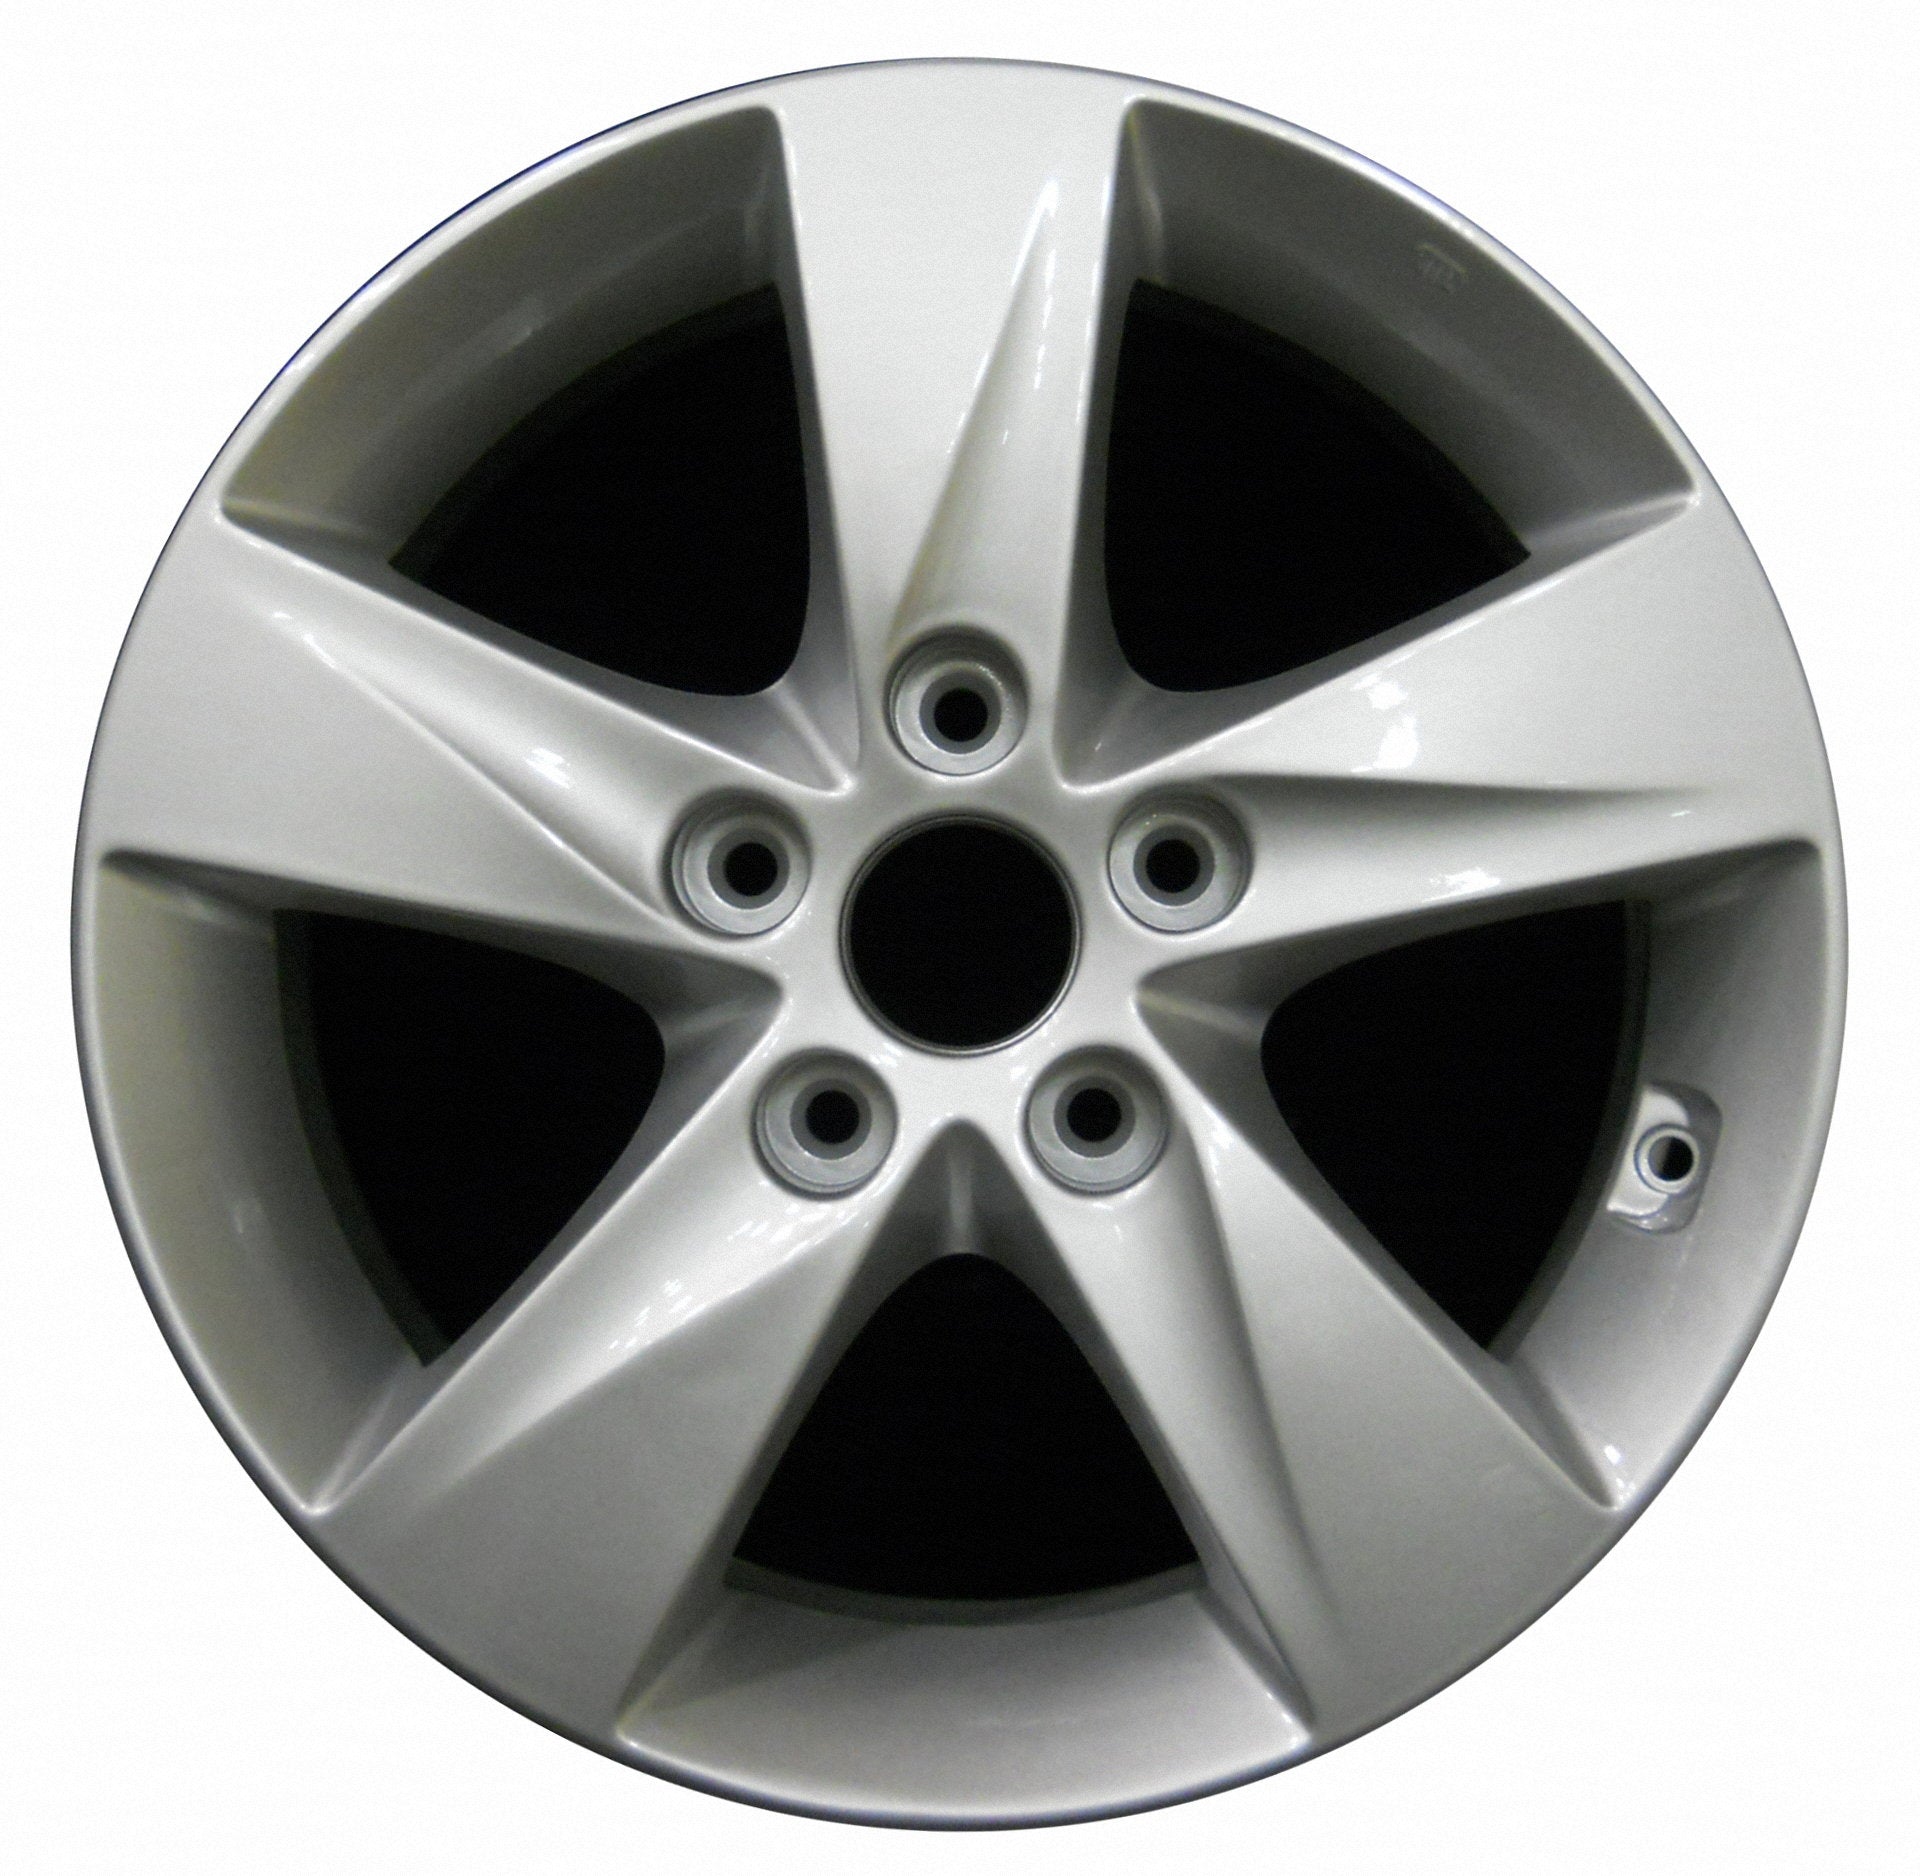 Hyundai Elantra  2011, 2012, 2013 Factory OEM Car Wheel Size 16x6.5 Alloy WAO.70806.LS03.FF